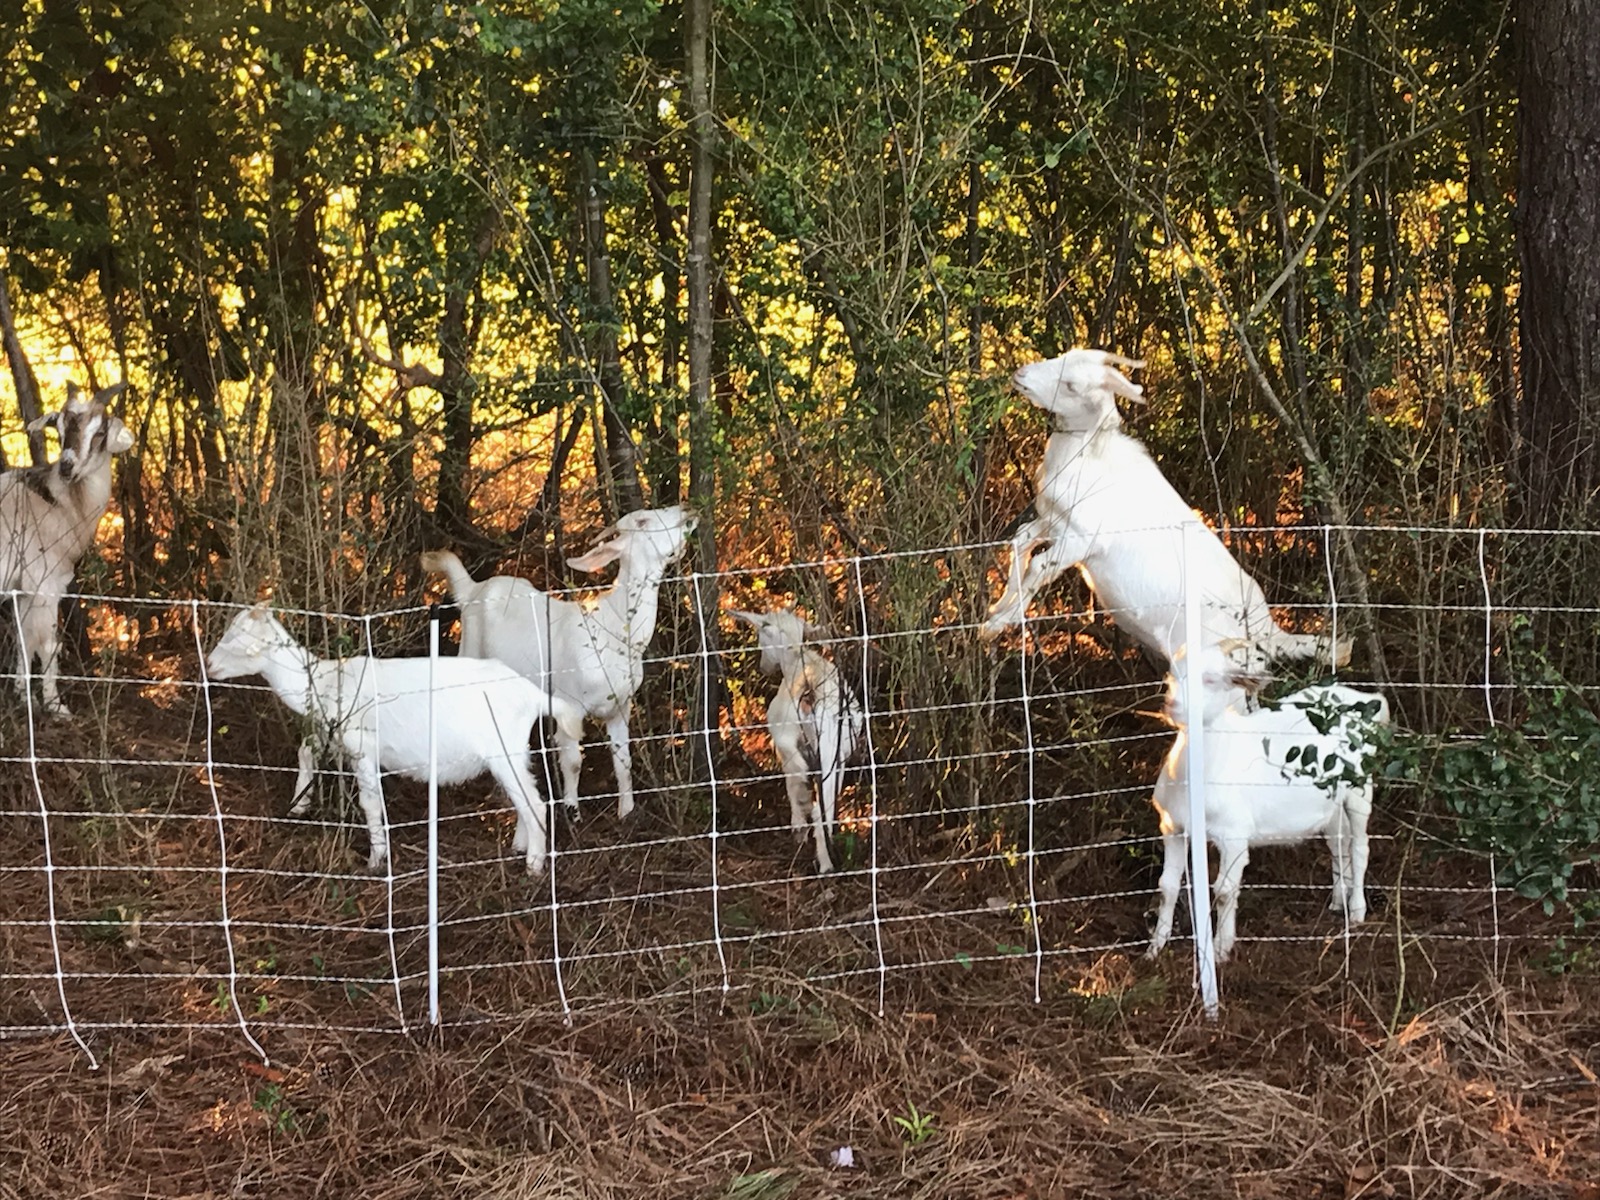 Goats at Dix Park